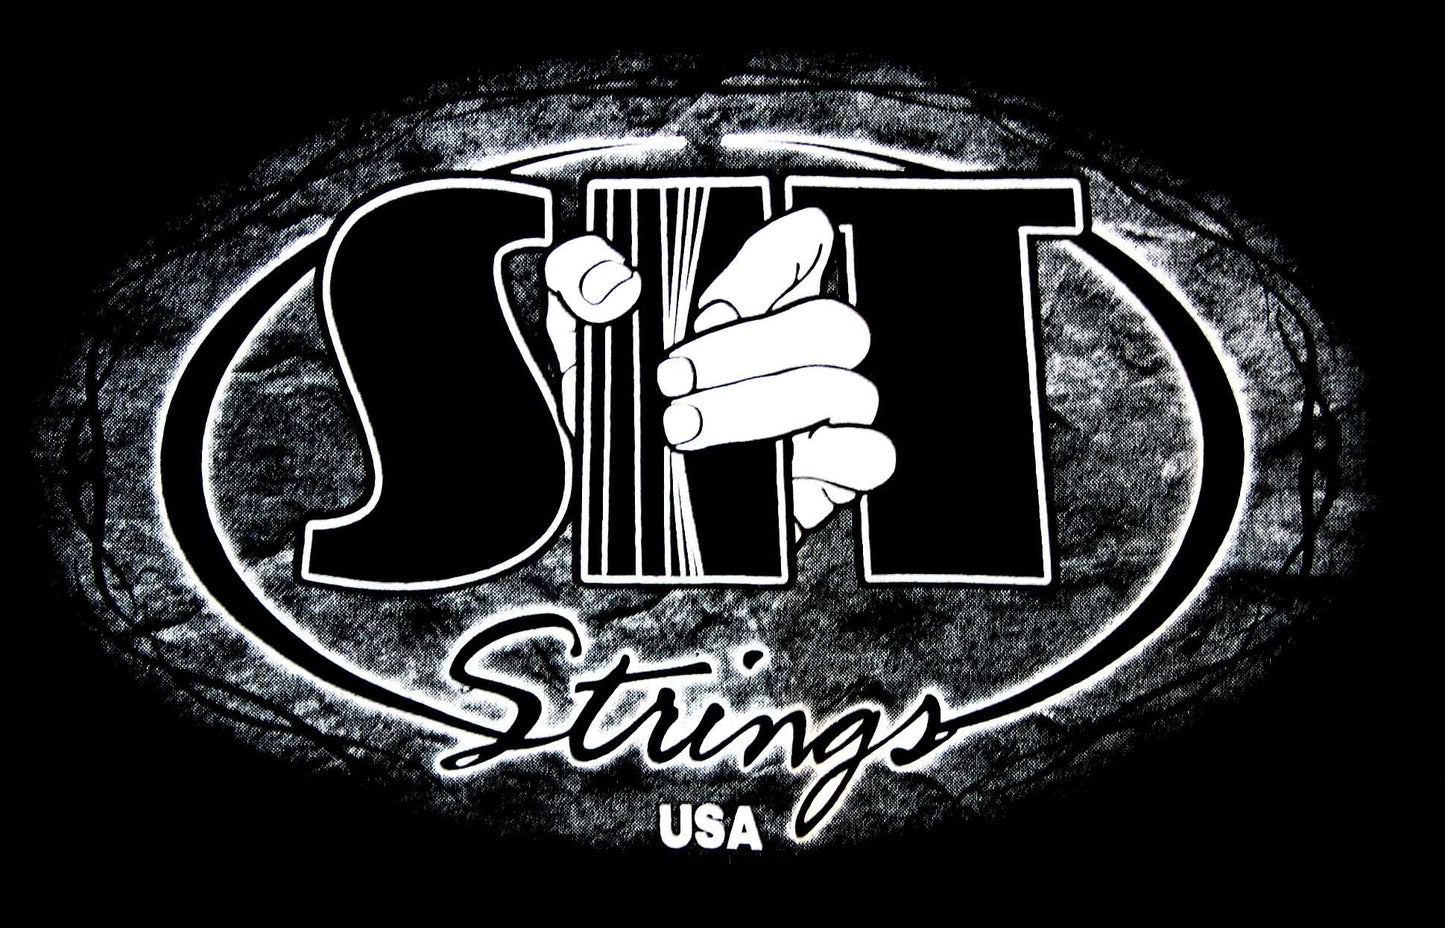 Single SIT Strings